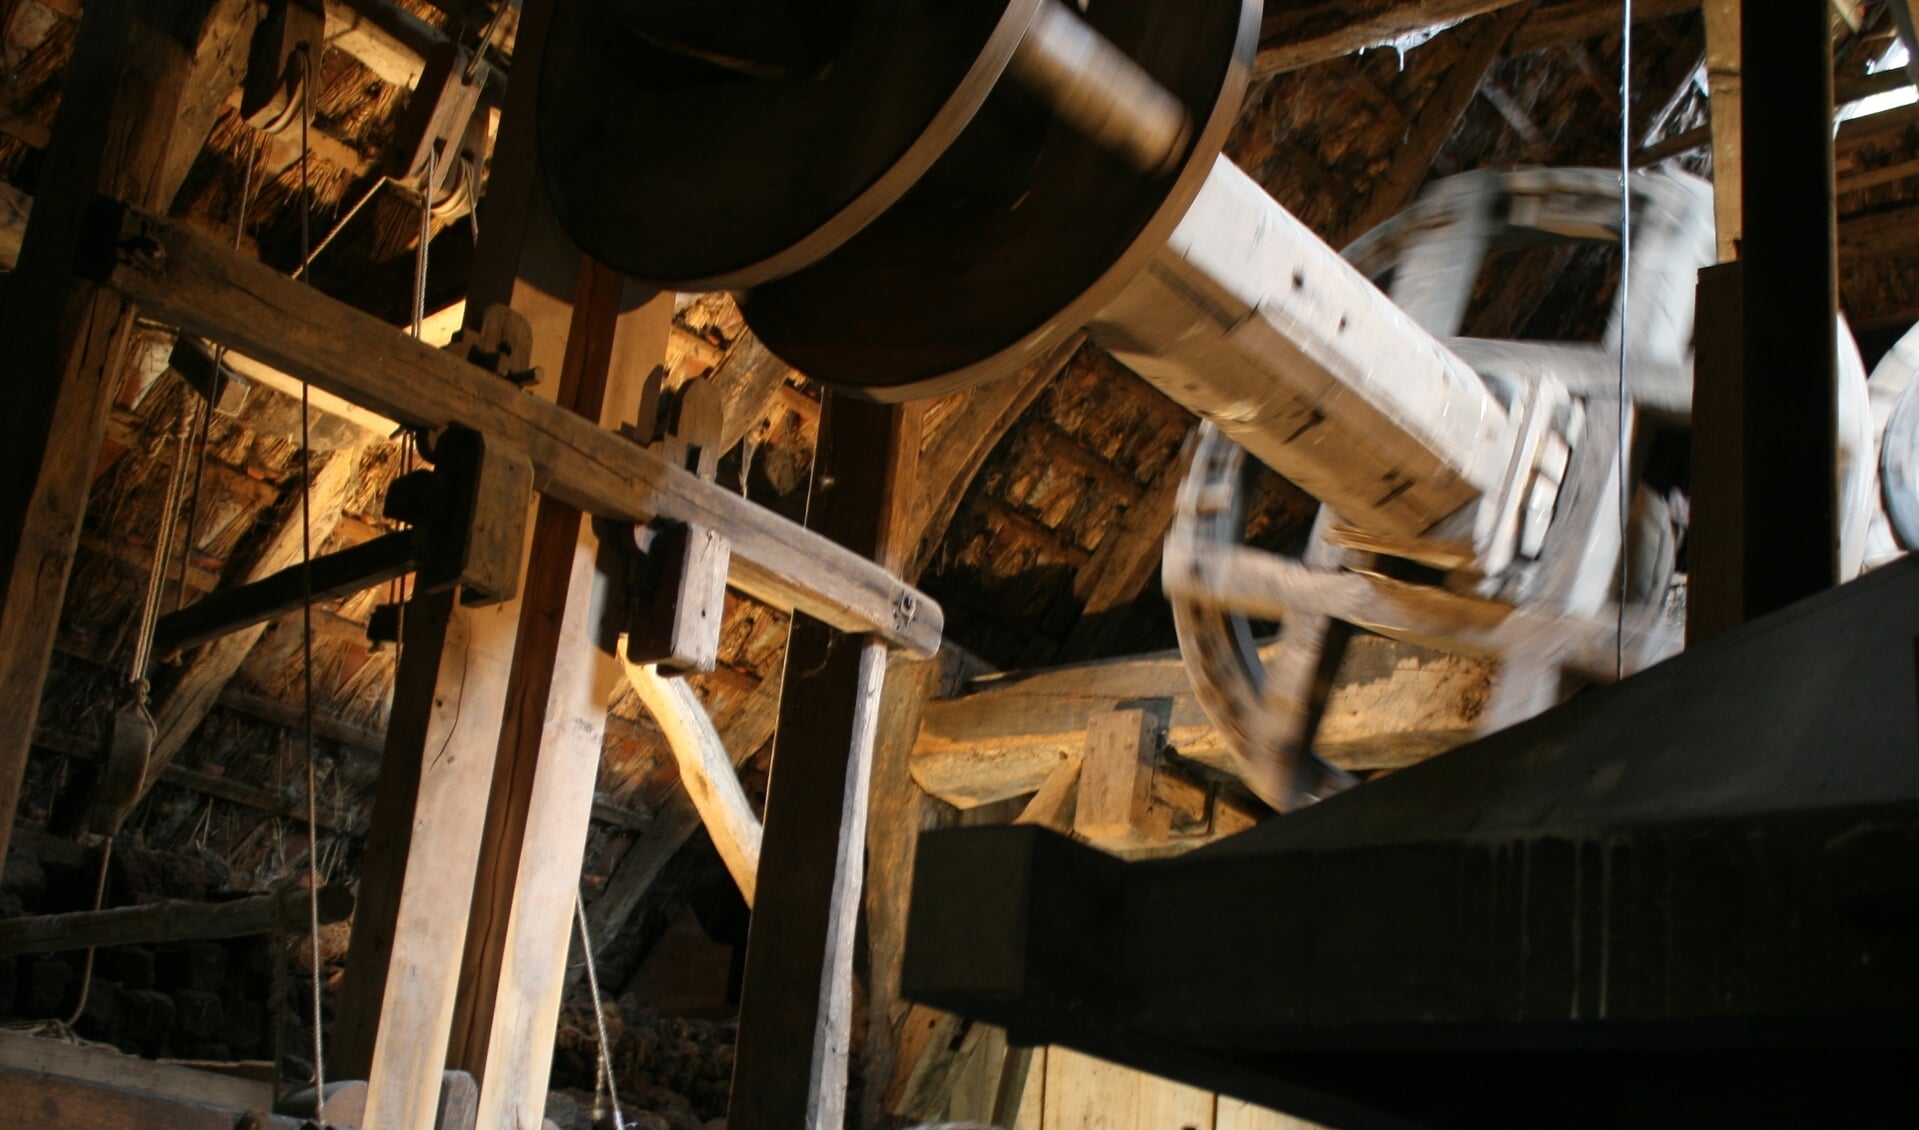 Ros olie-molen in openlucht museum Erve Kots. Foto: Jos Betting/archief Achterhoek Nieuws